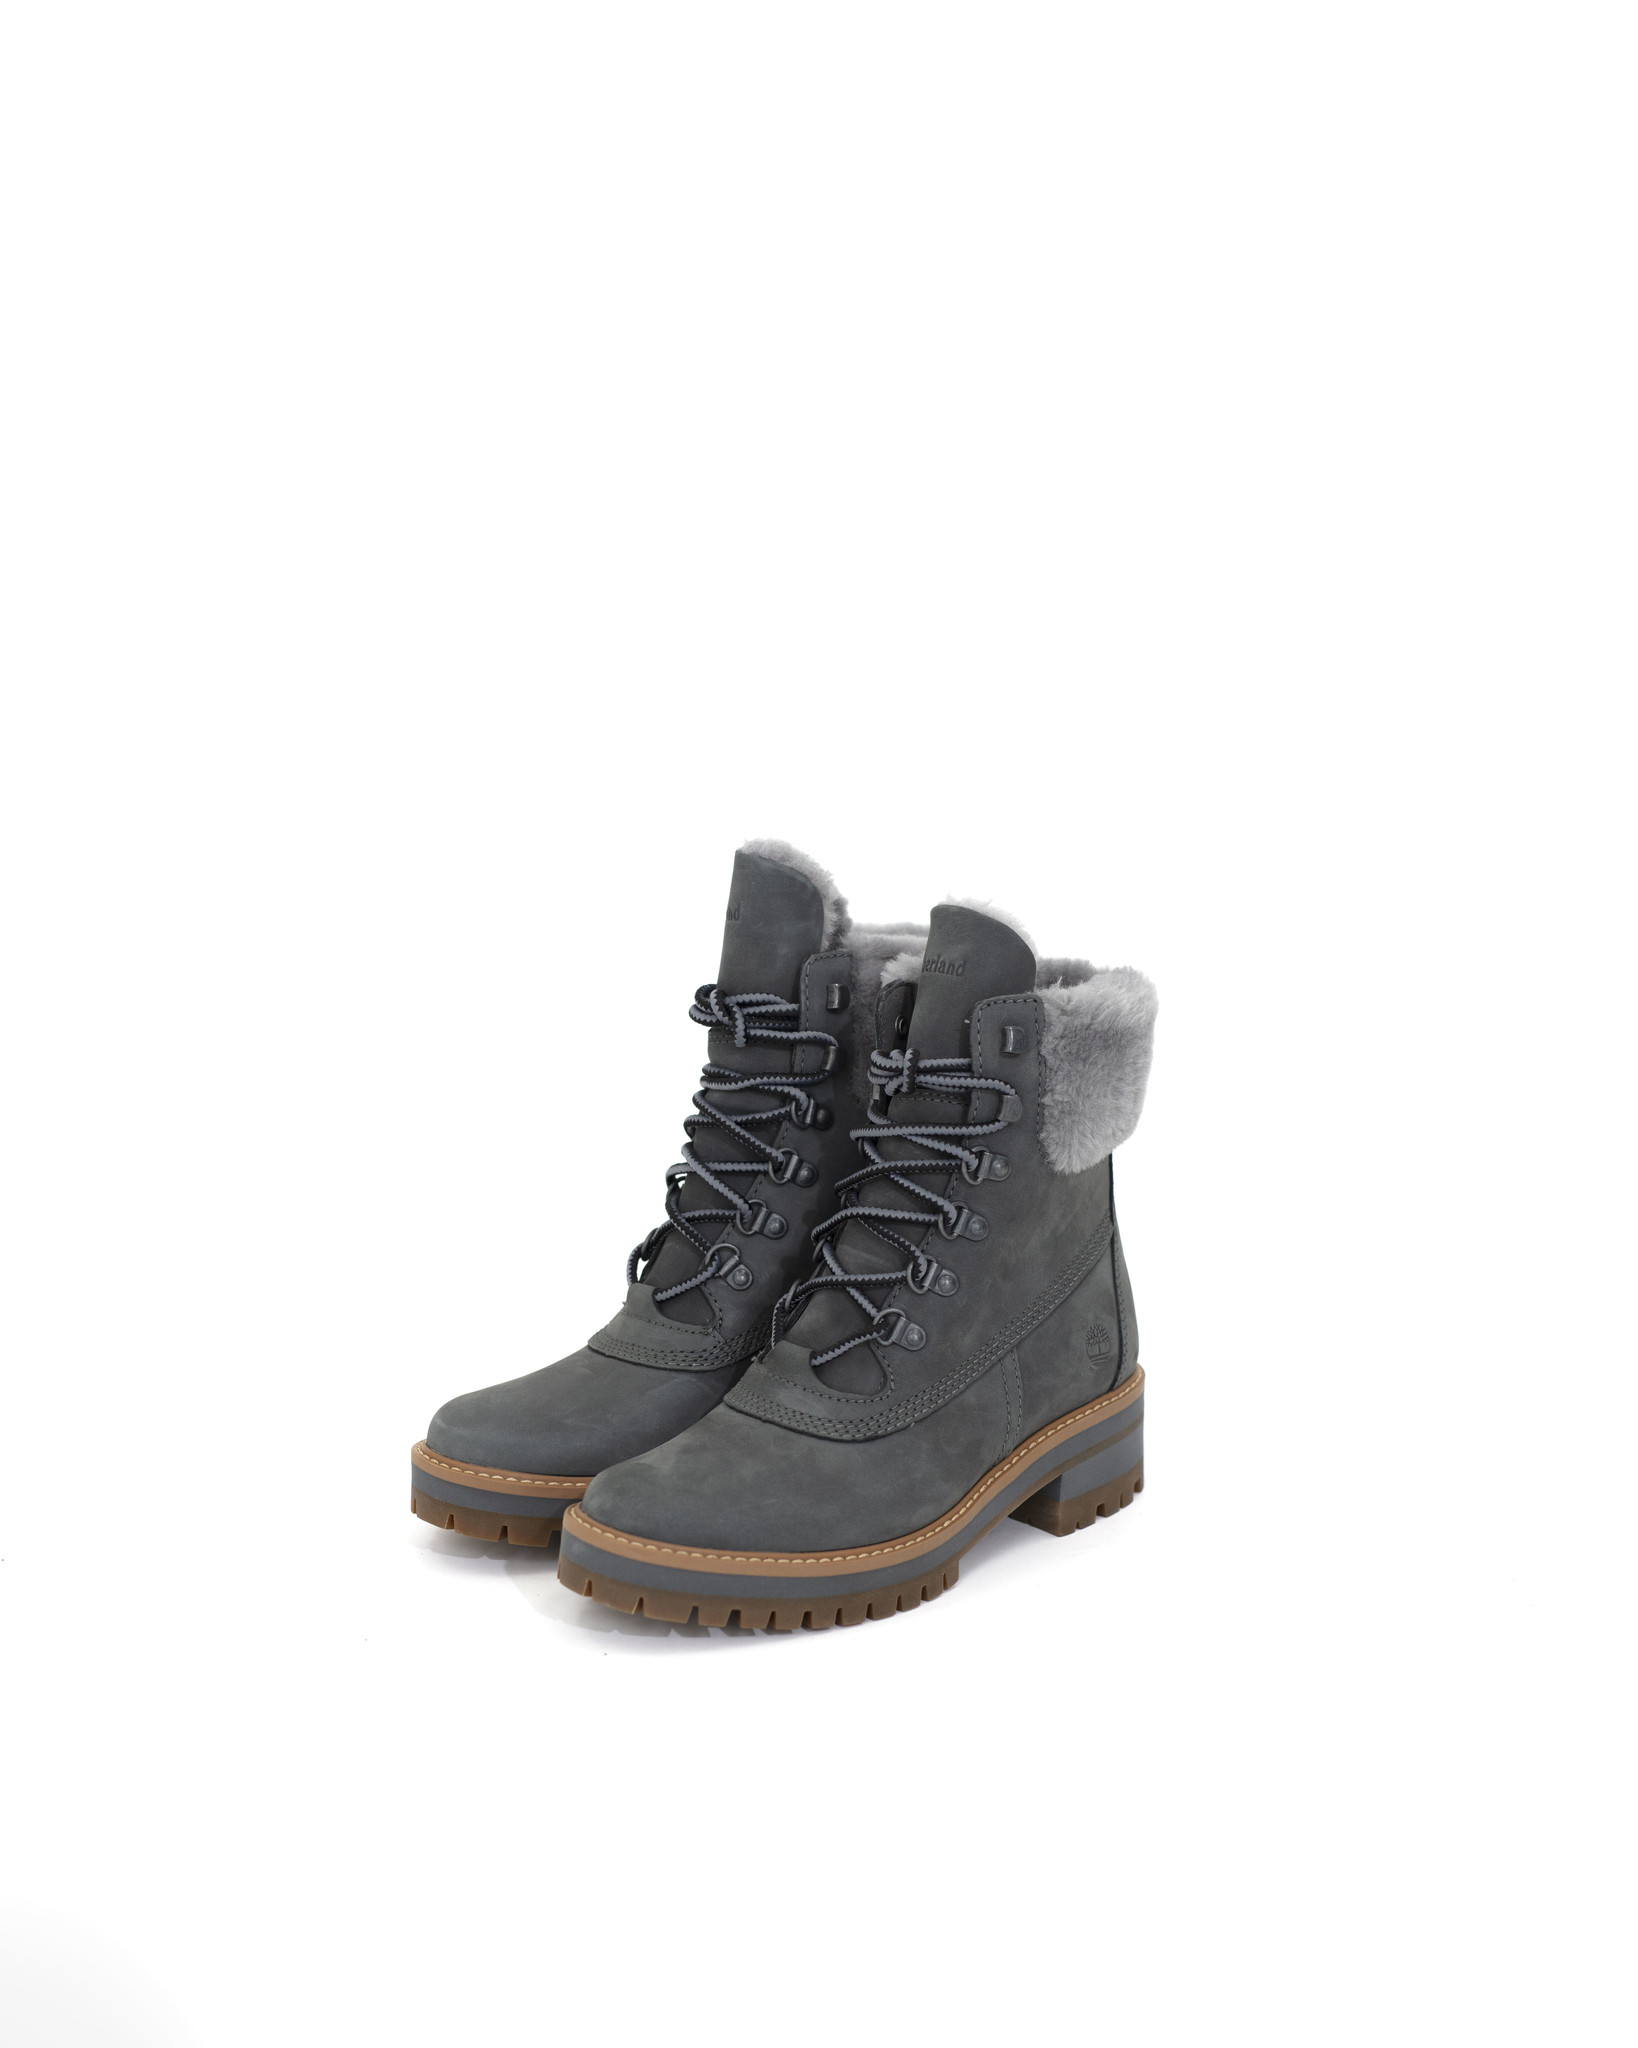 Womens Timberland Courmayeur Shearl Waterproof Boots 'Md Grey/Gargoyle -  Top Fashion